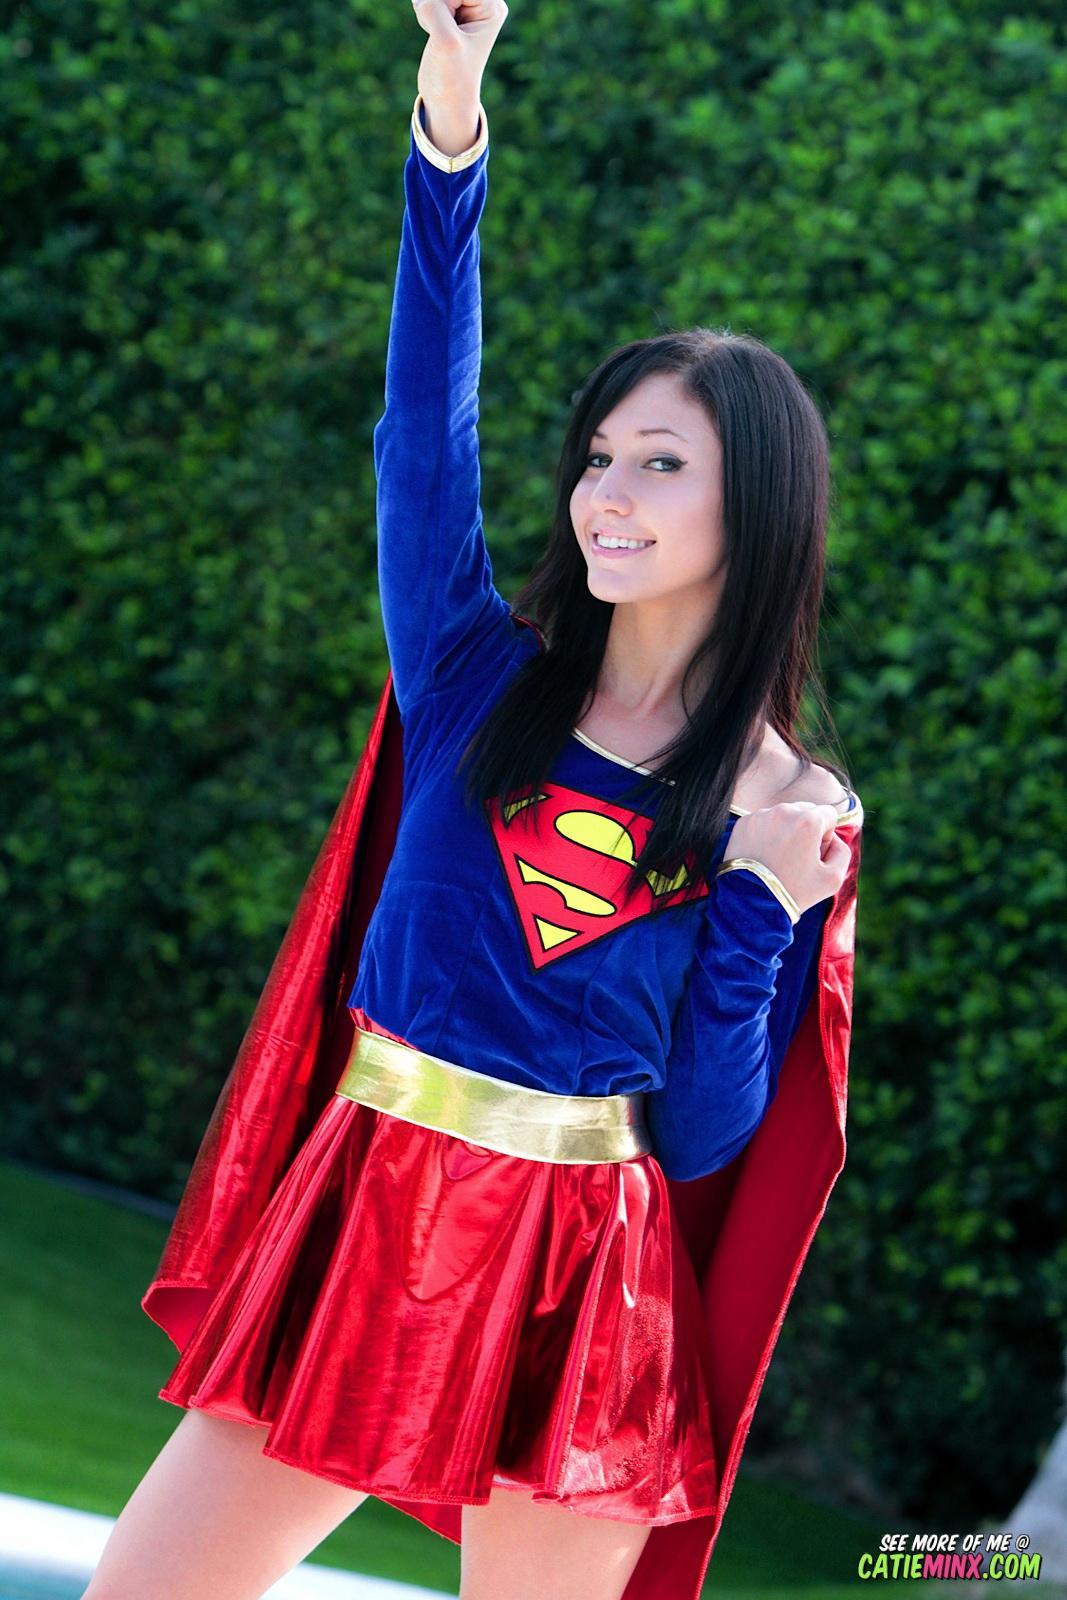 Mild mannered nerd Catie Minx reveals her super naughty powers as Supergirl #53722775